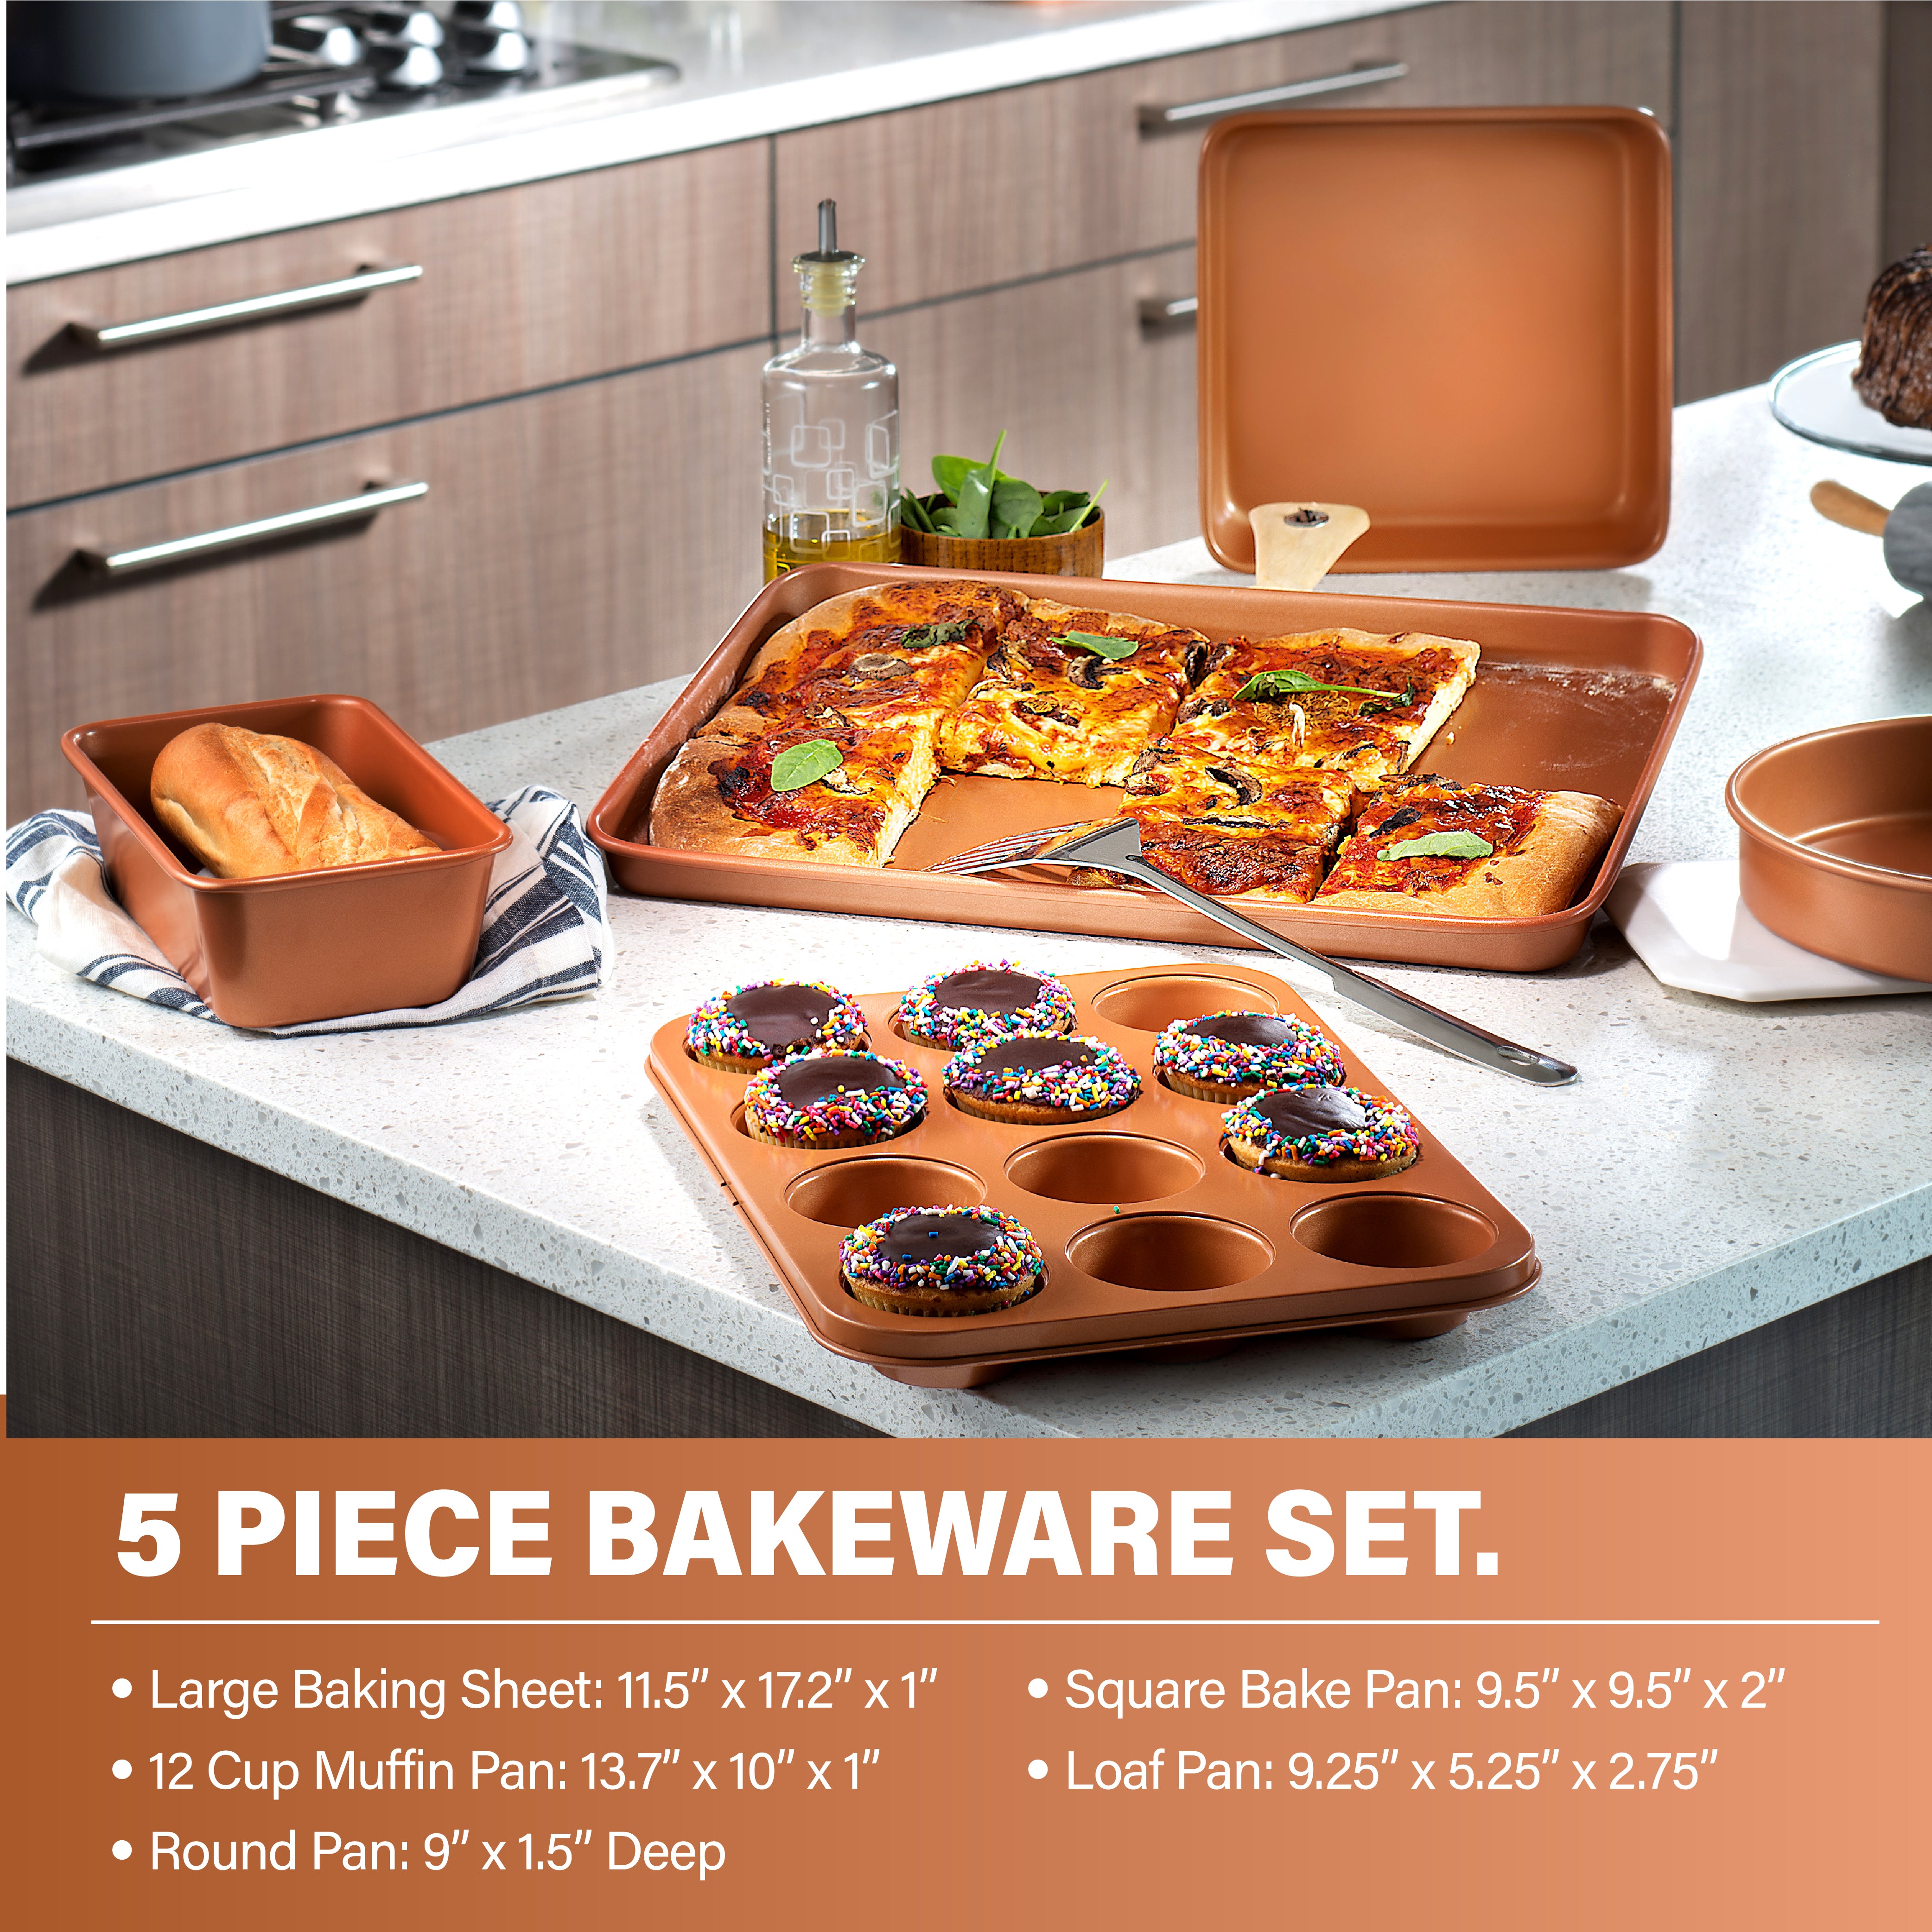 Titanium Nonstick 5-Piece Cookware Set – Saflon